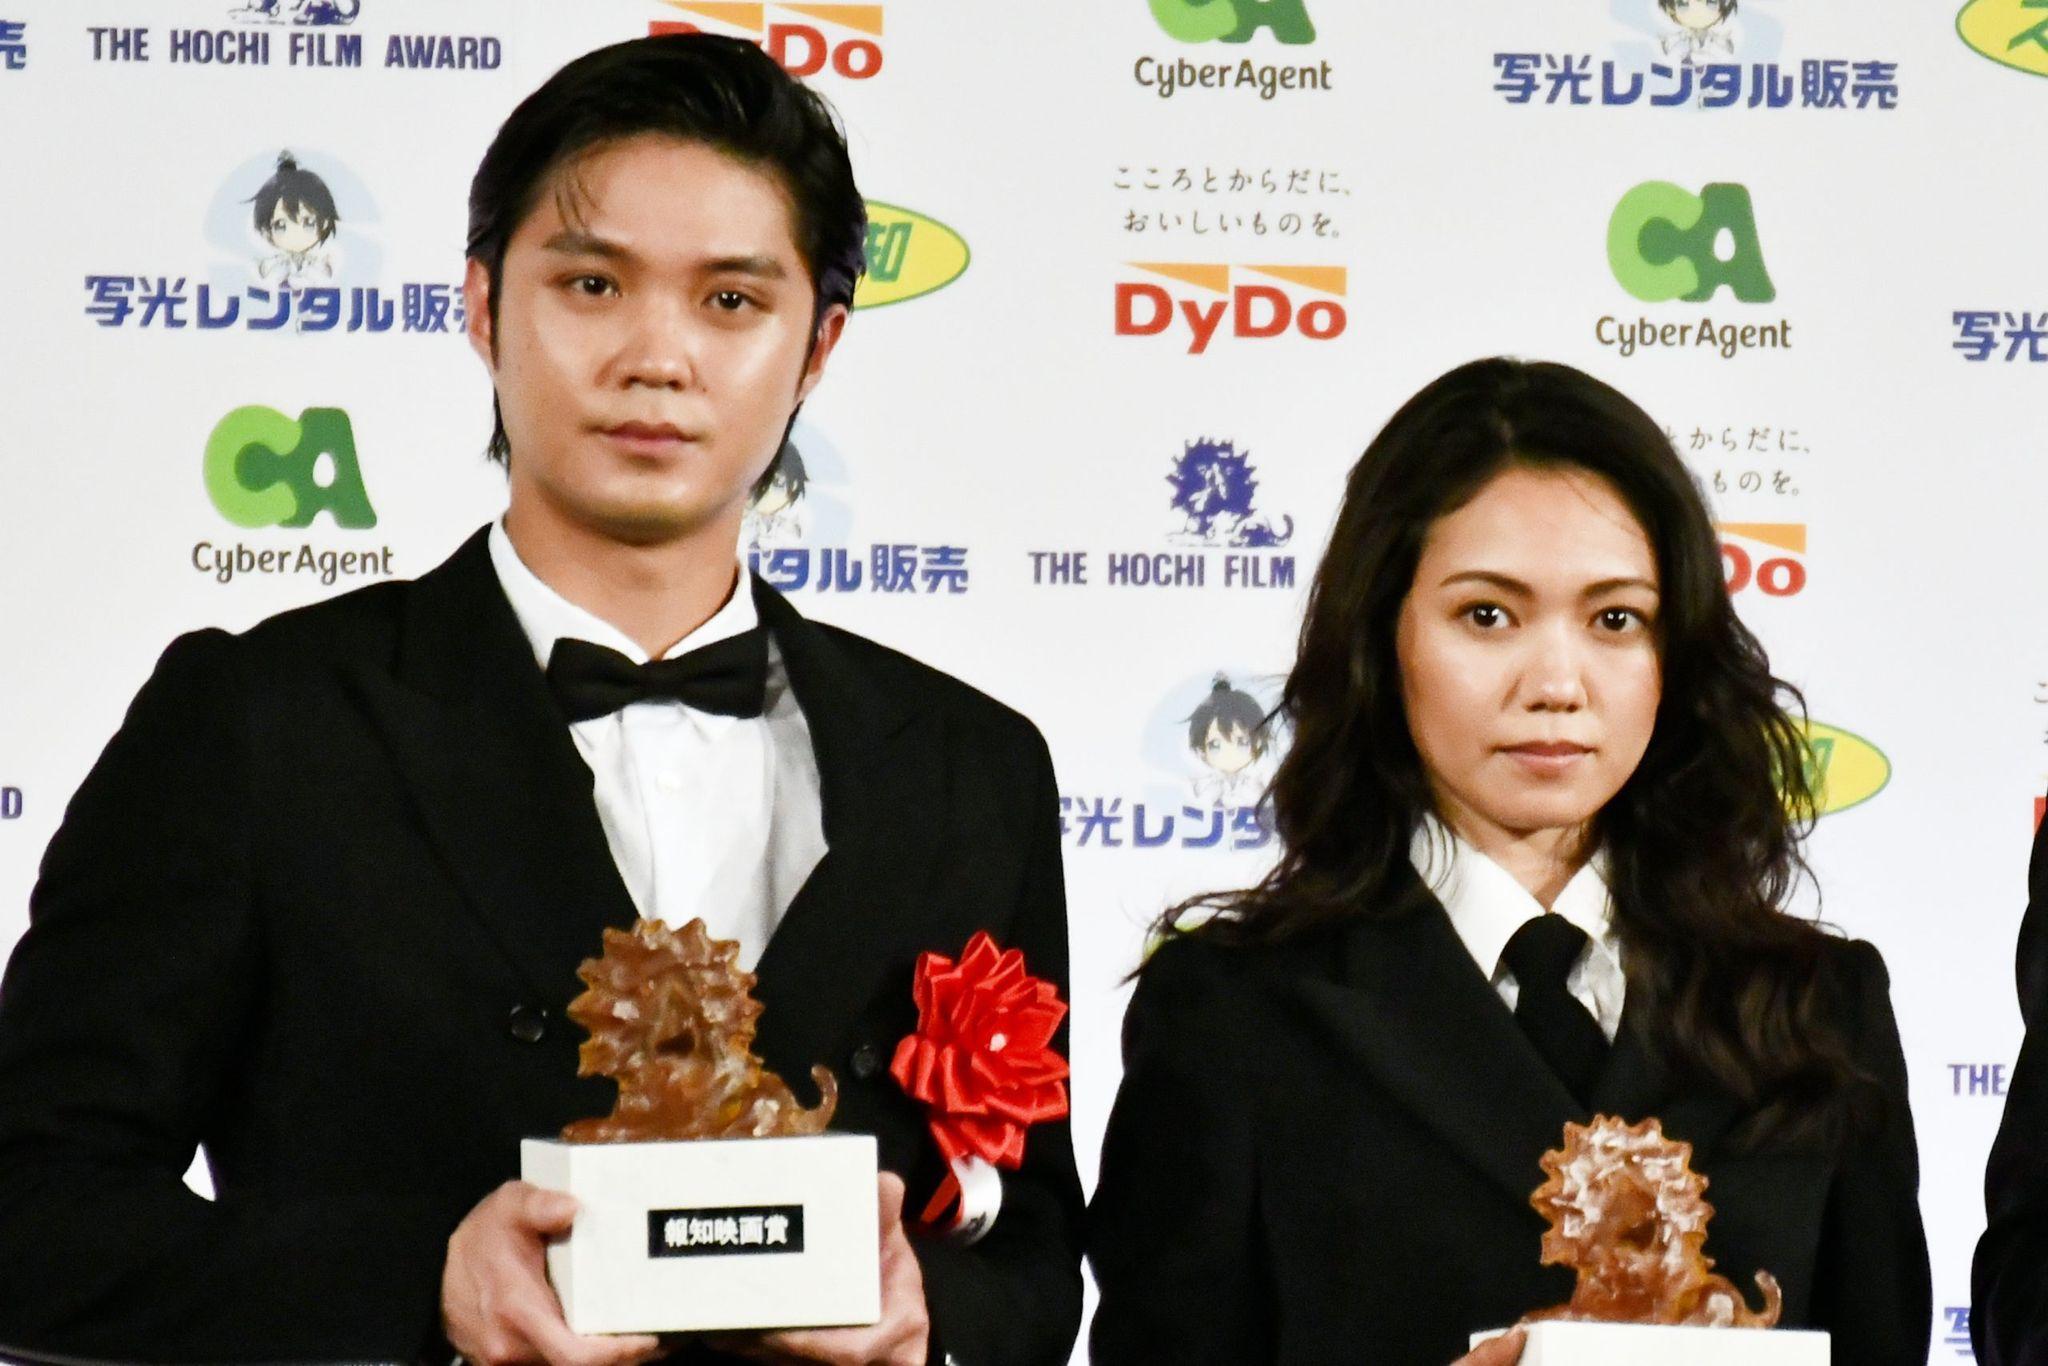 二階堂ふみ「“映画は社会を変えられる”という希望を感じた」磯村勇斗と「報知映画賞」助演賞を受賞